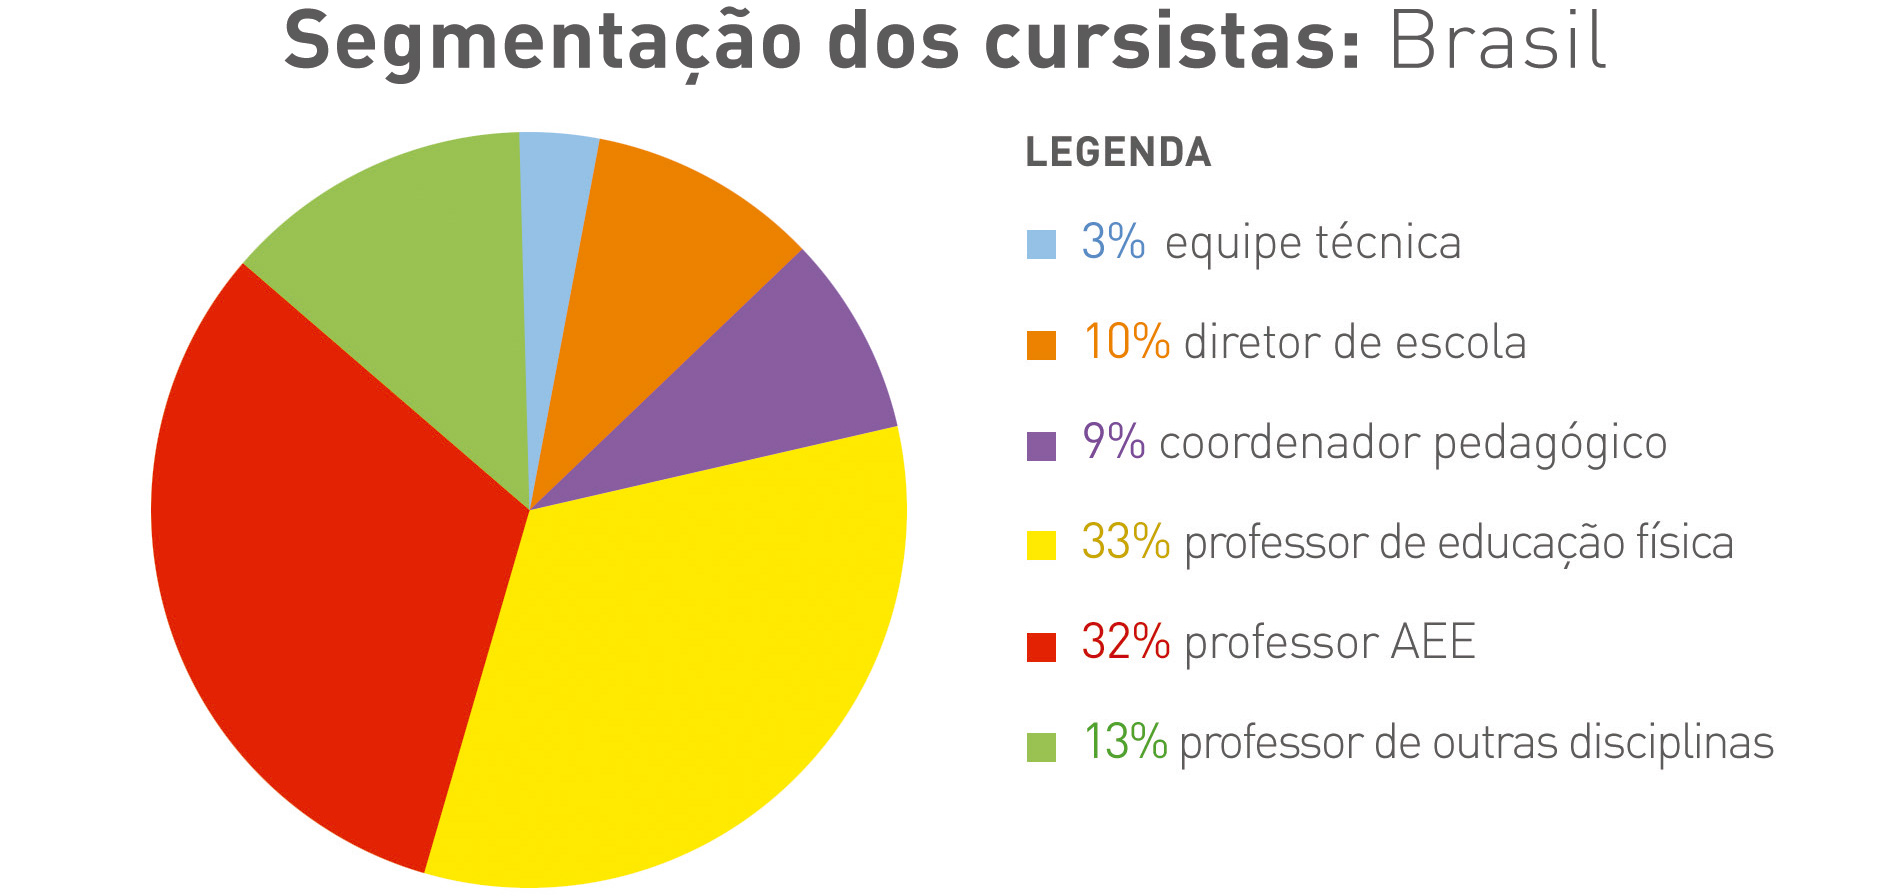 Gráfico colorido em formato de pizza com segmentação de cursistas no Brasil. Legenda: 3% - equipe técnica; 10 % - diretor de escola; 10% - coordenador pedagógico; 33% - professor de educação física; 32% - professor de aee; 13% - professor de outras disciplinas.